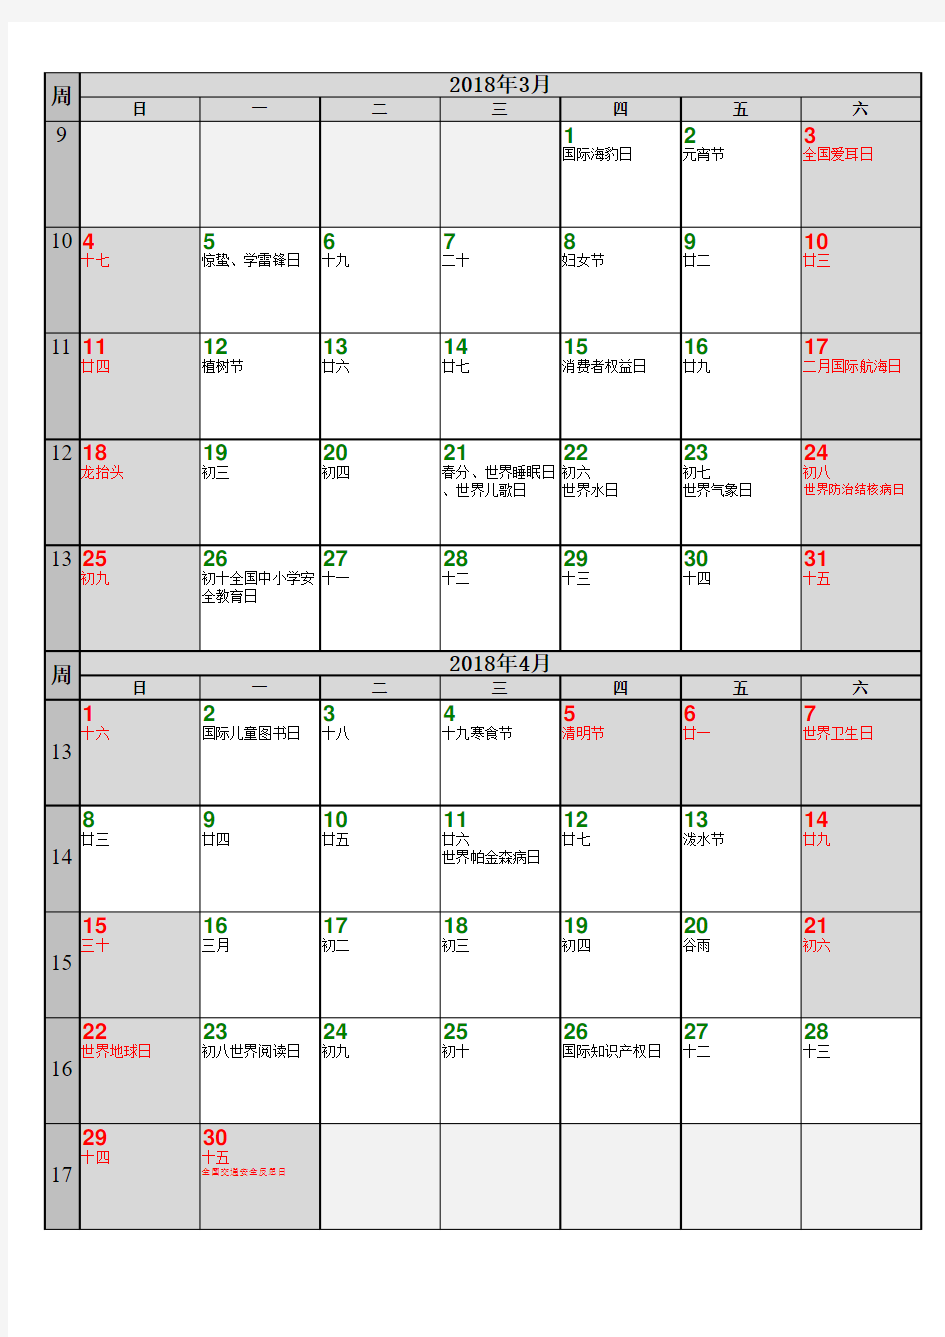 2018年重要纪念日日历表(含国务院节假日安排)